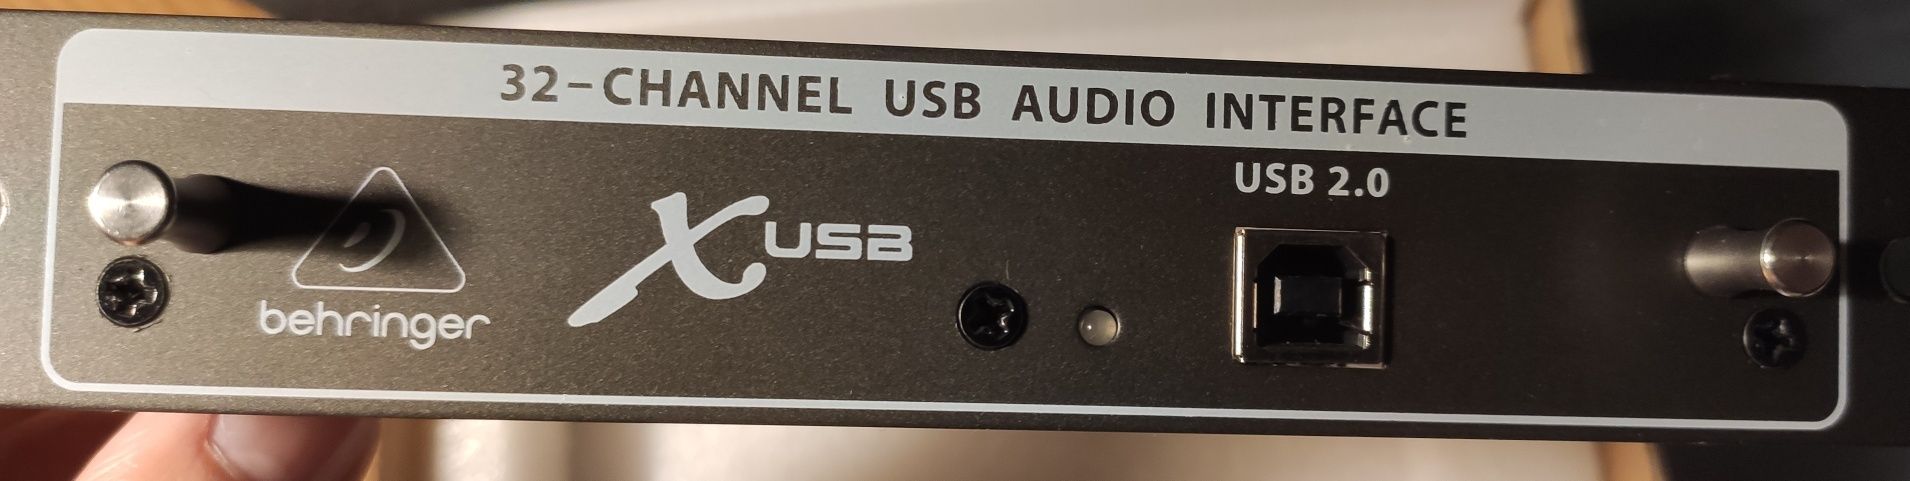 Behringer karta rozszerzenia USB do konsolet X32